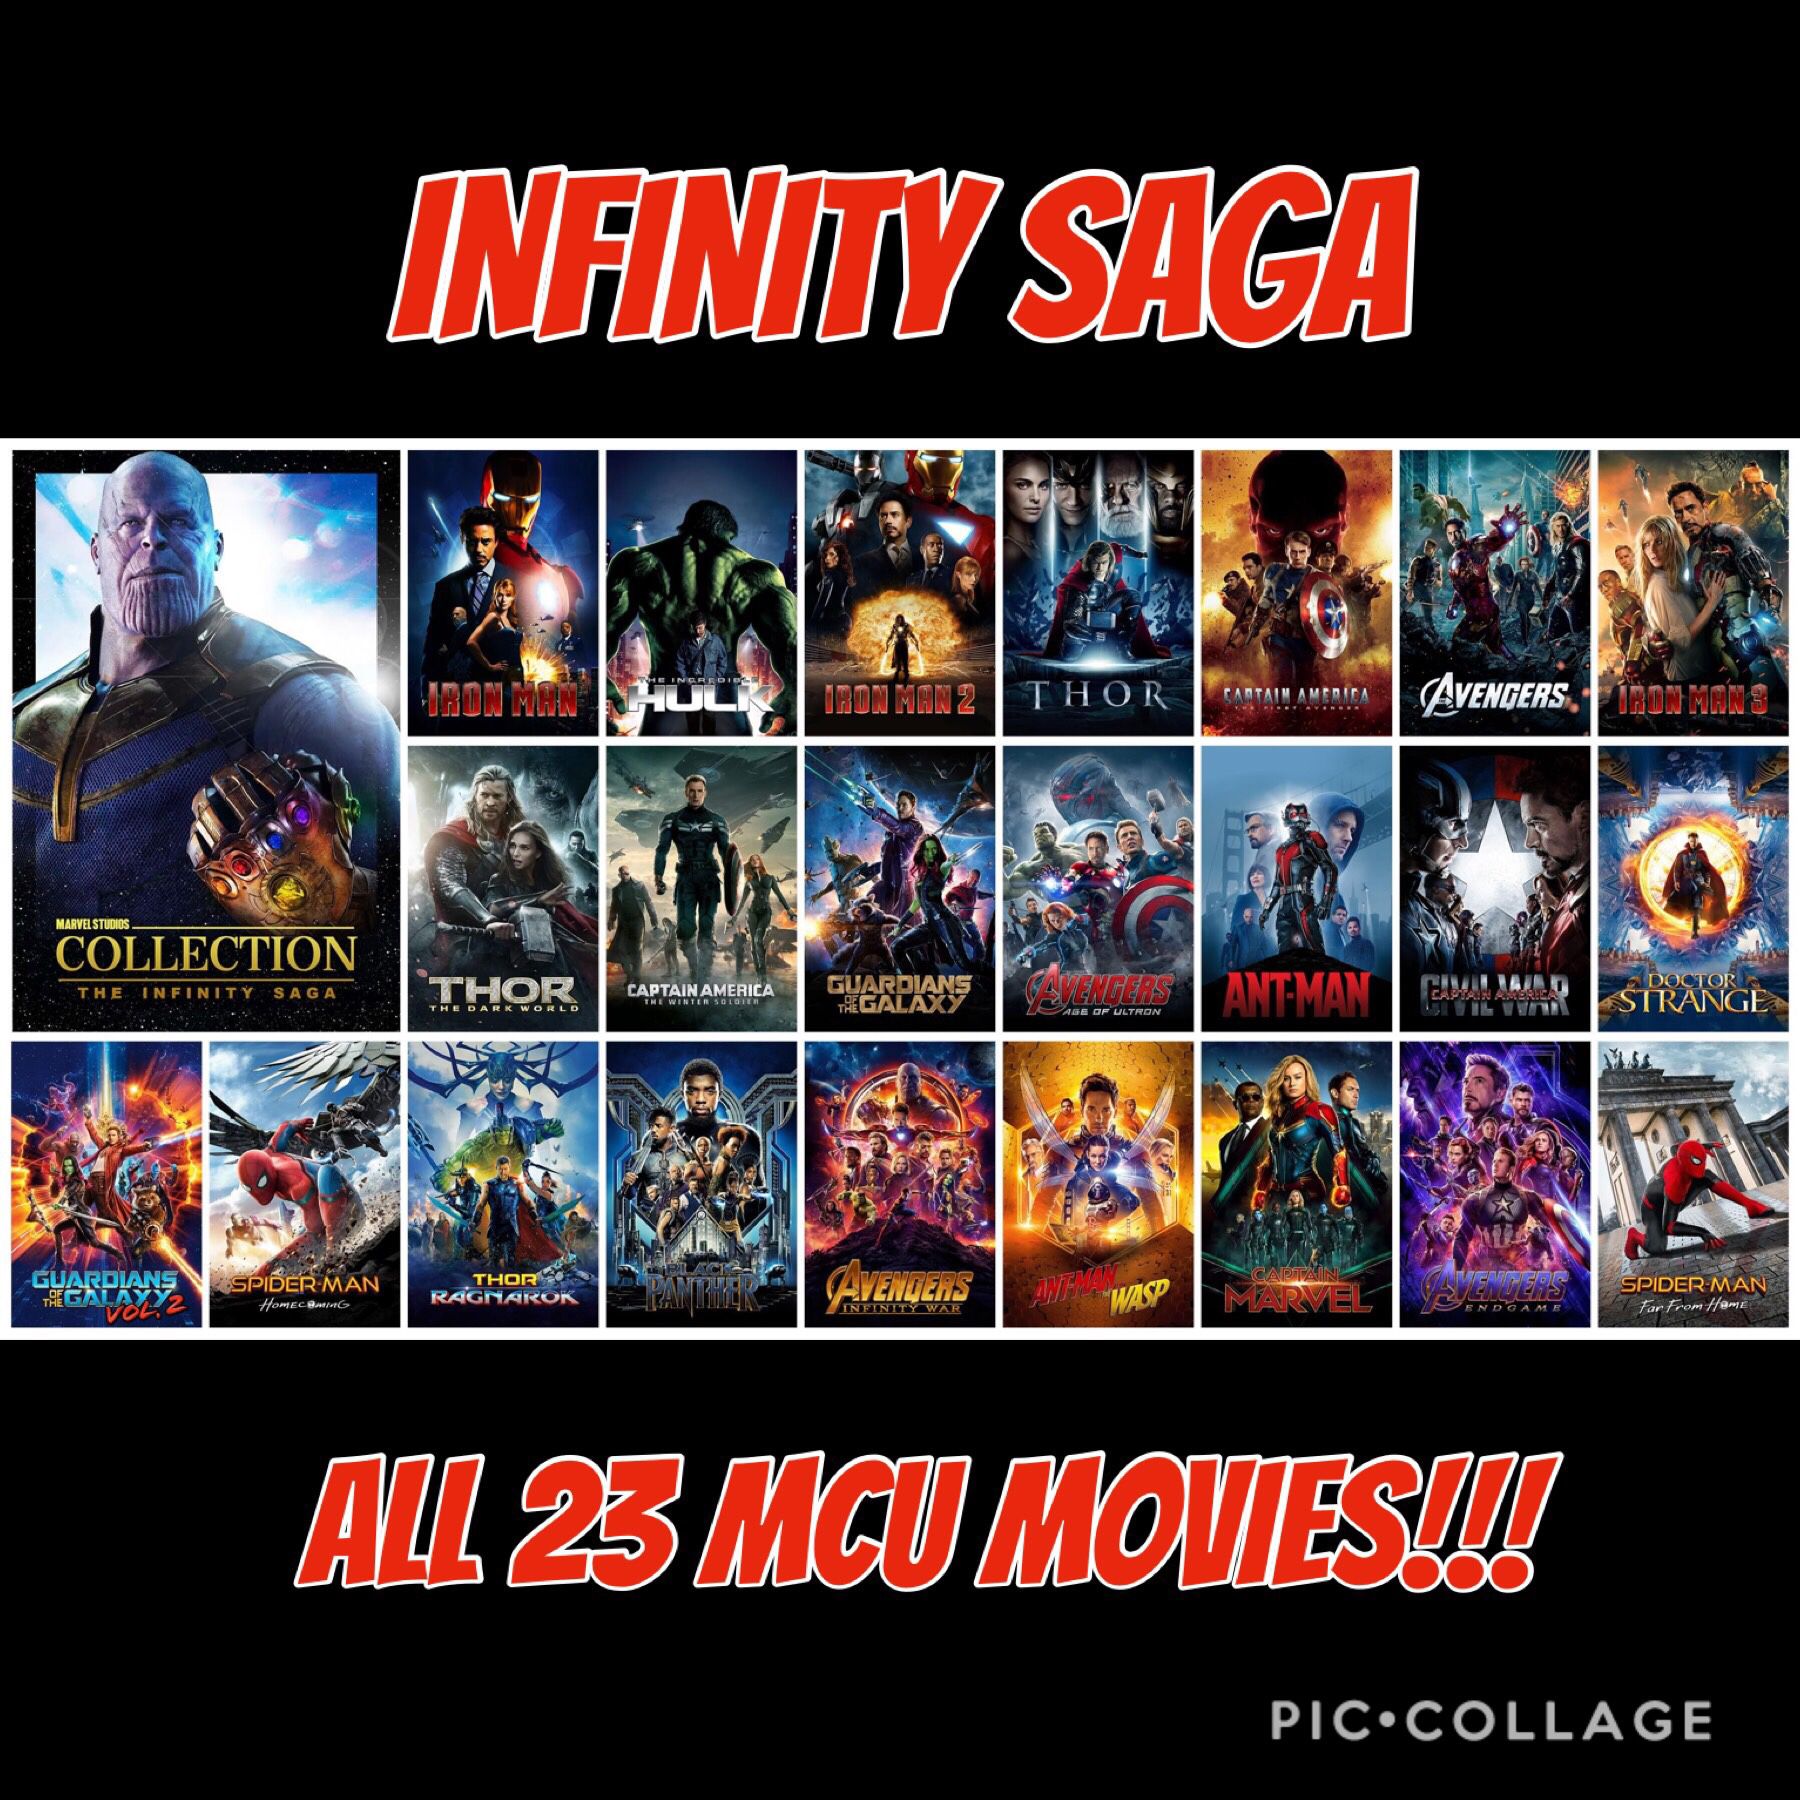 Entire Infinity Saga (Marvel MCU movies) on digital.